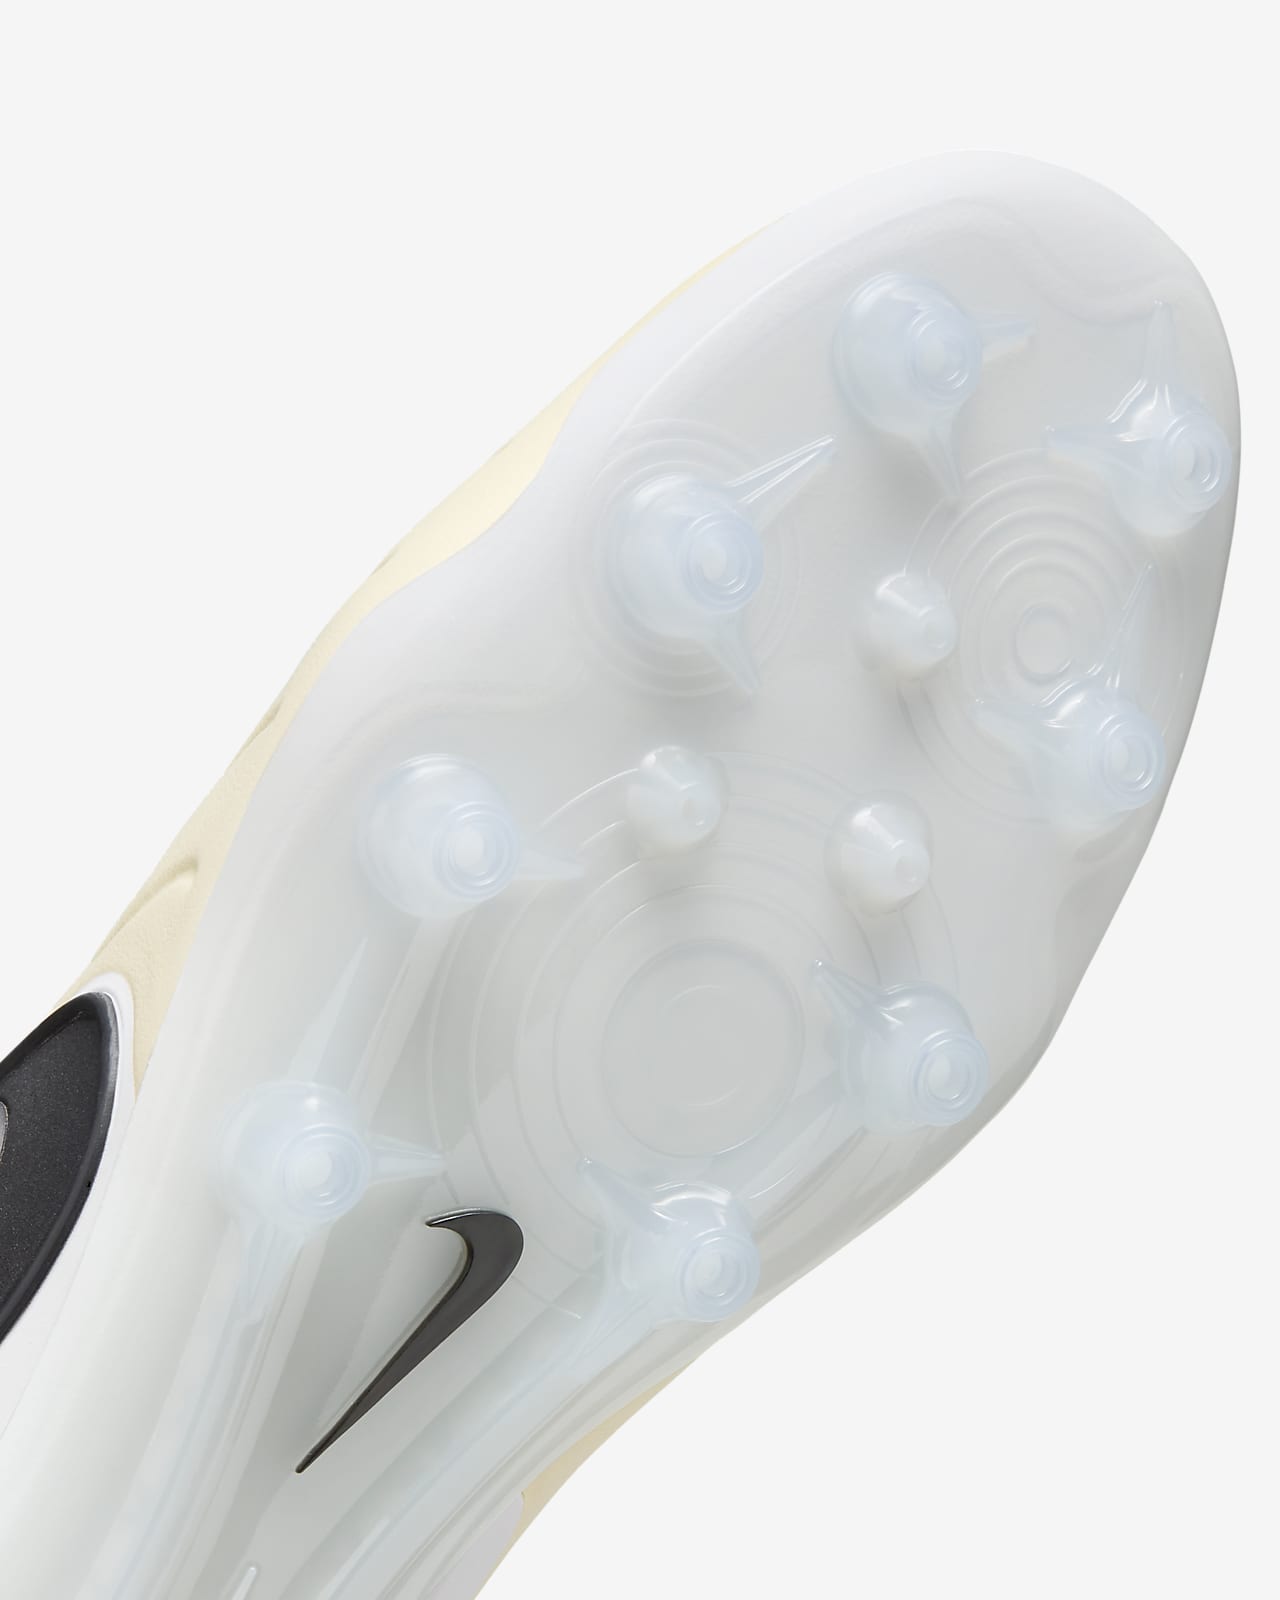 Botas de fútbol para césped artificial. Nike ES